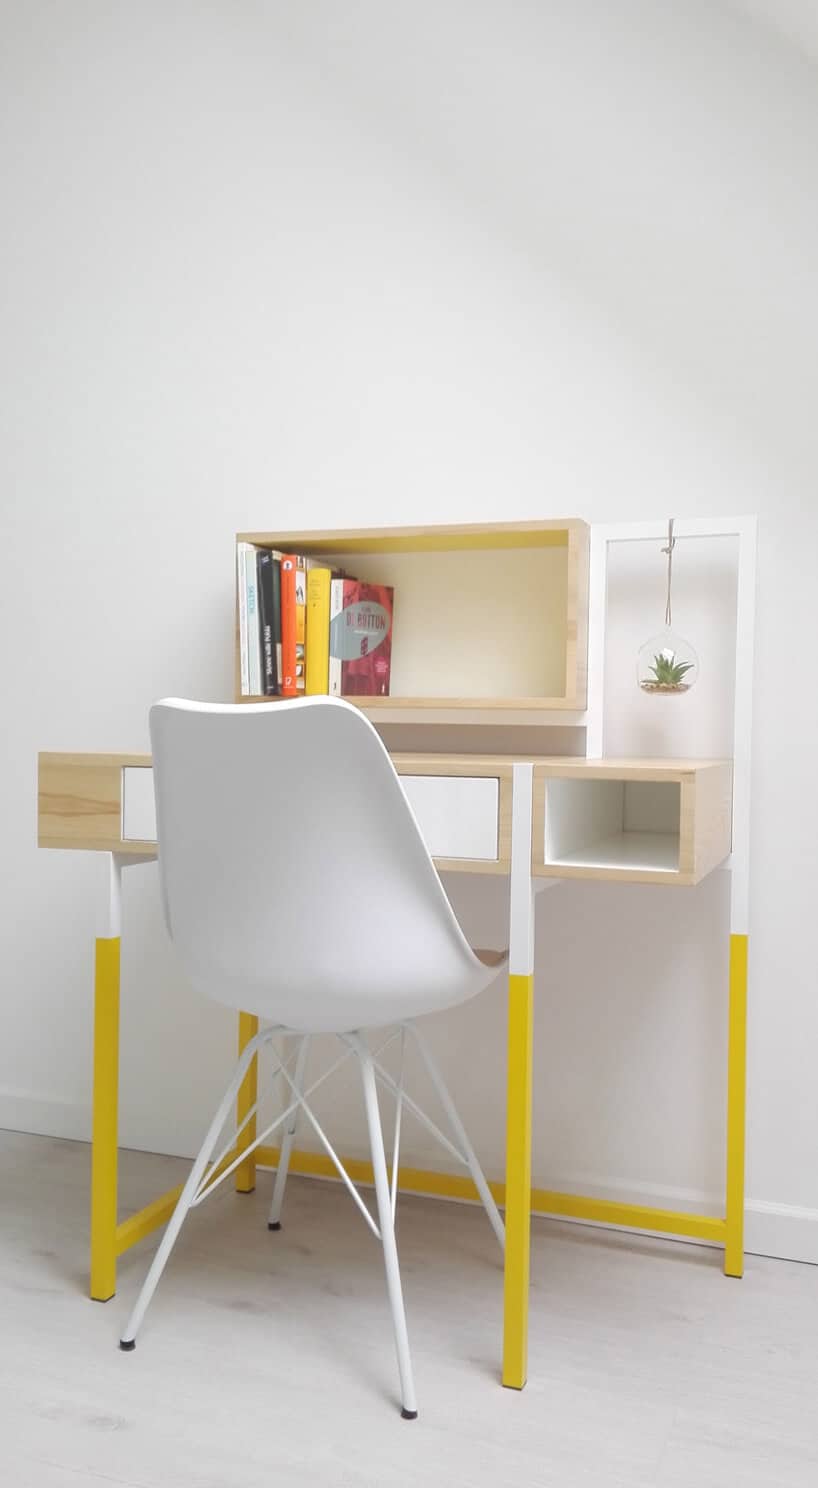 białe krzesło przy biurku z drewna z metalowymi nogami pomalowanymi na kolor żółty